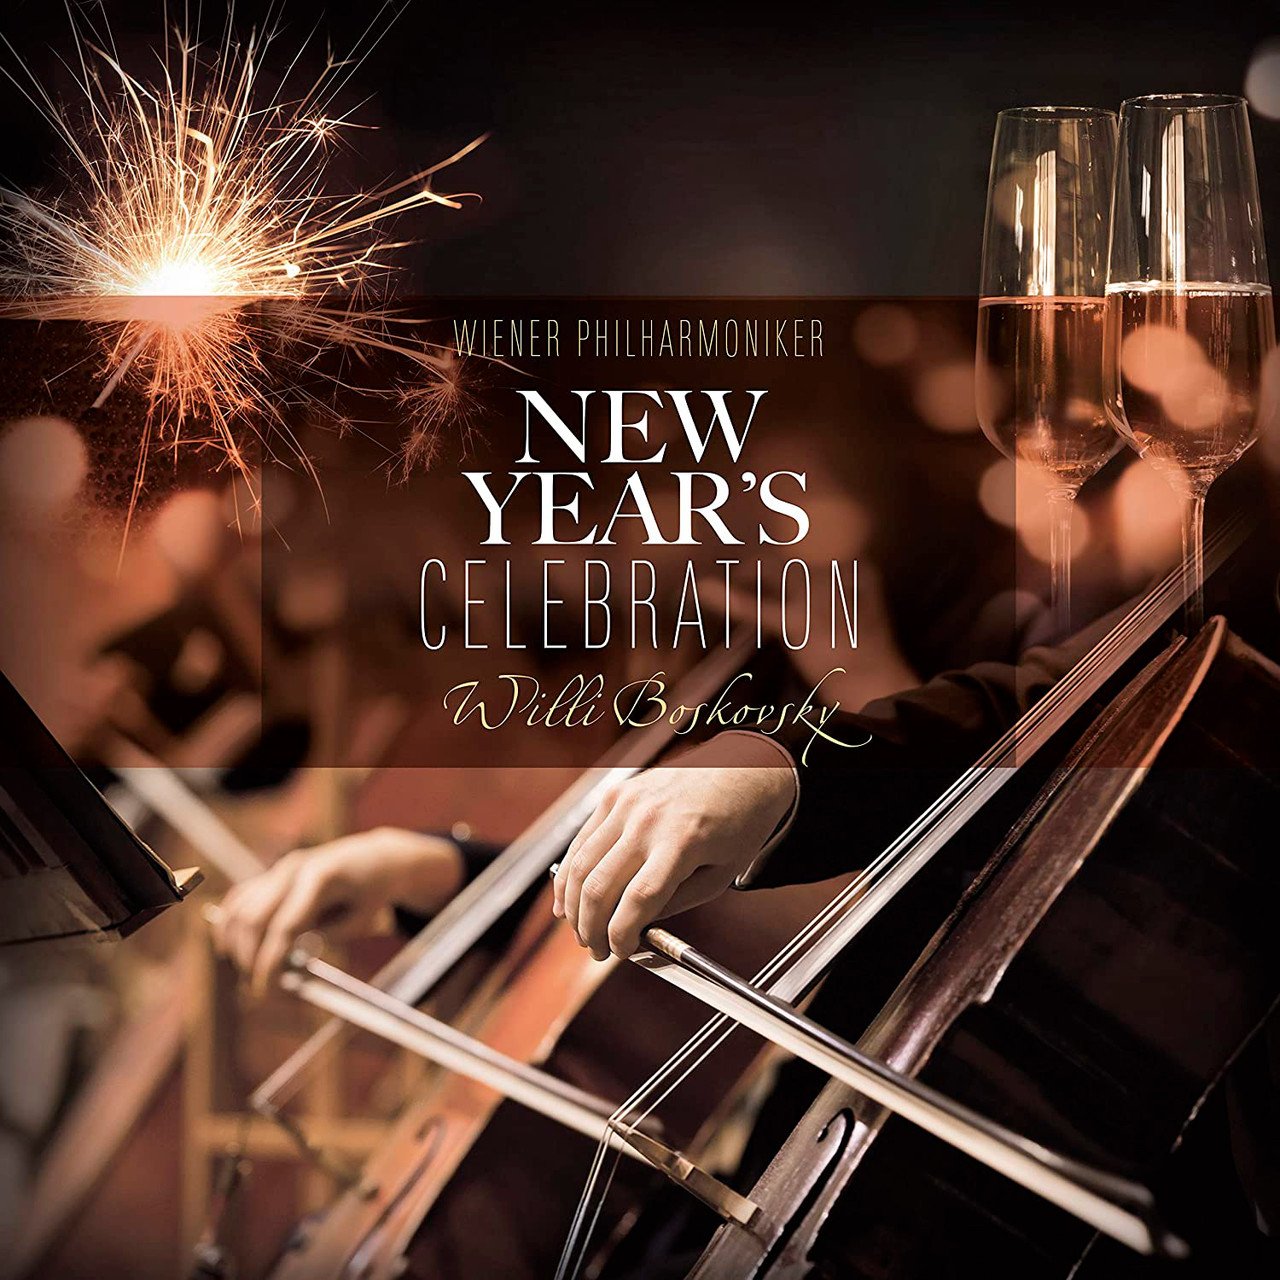 Wiener Philharmoniker/Willy Boskovsky - New Year's Celebration